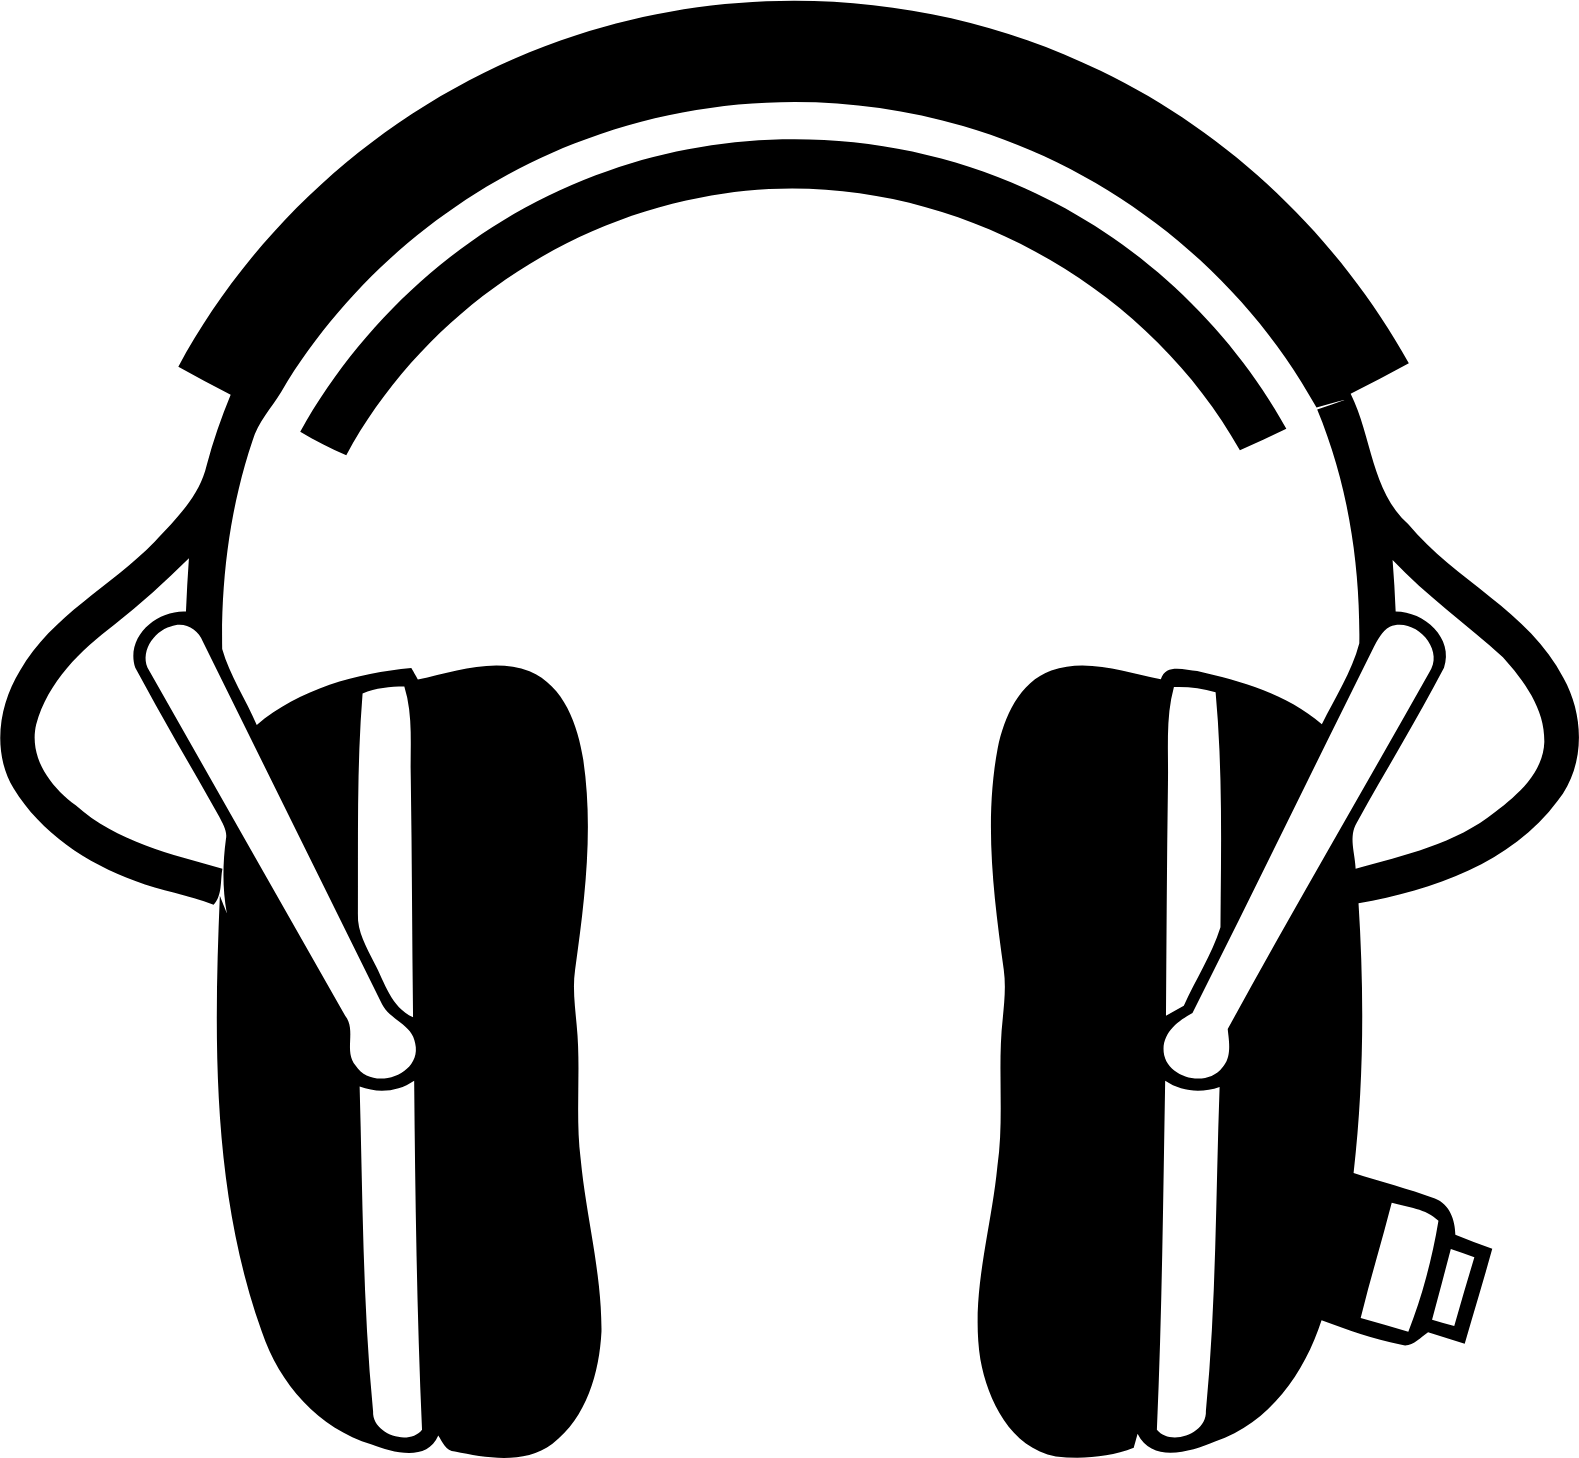 Koss logo (transparent PNG)